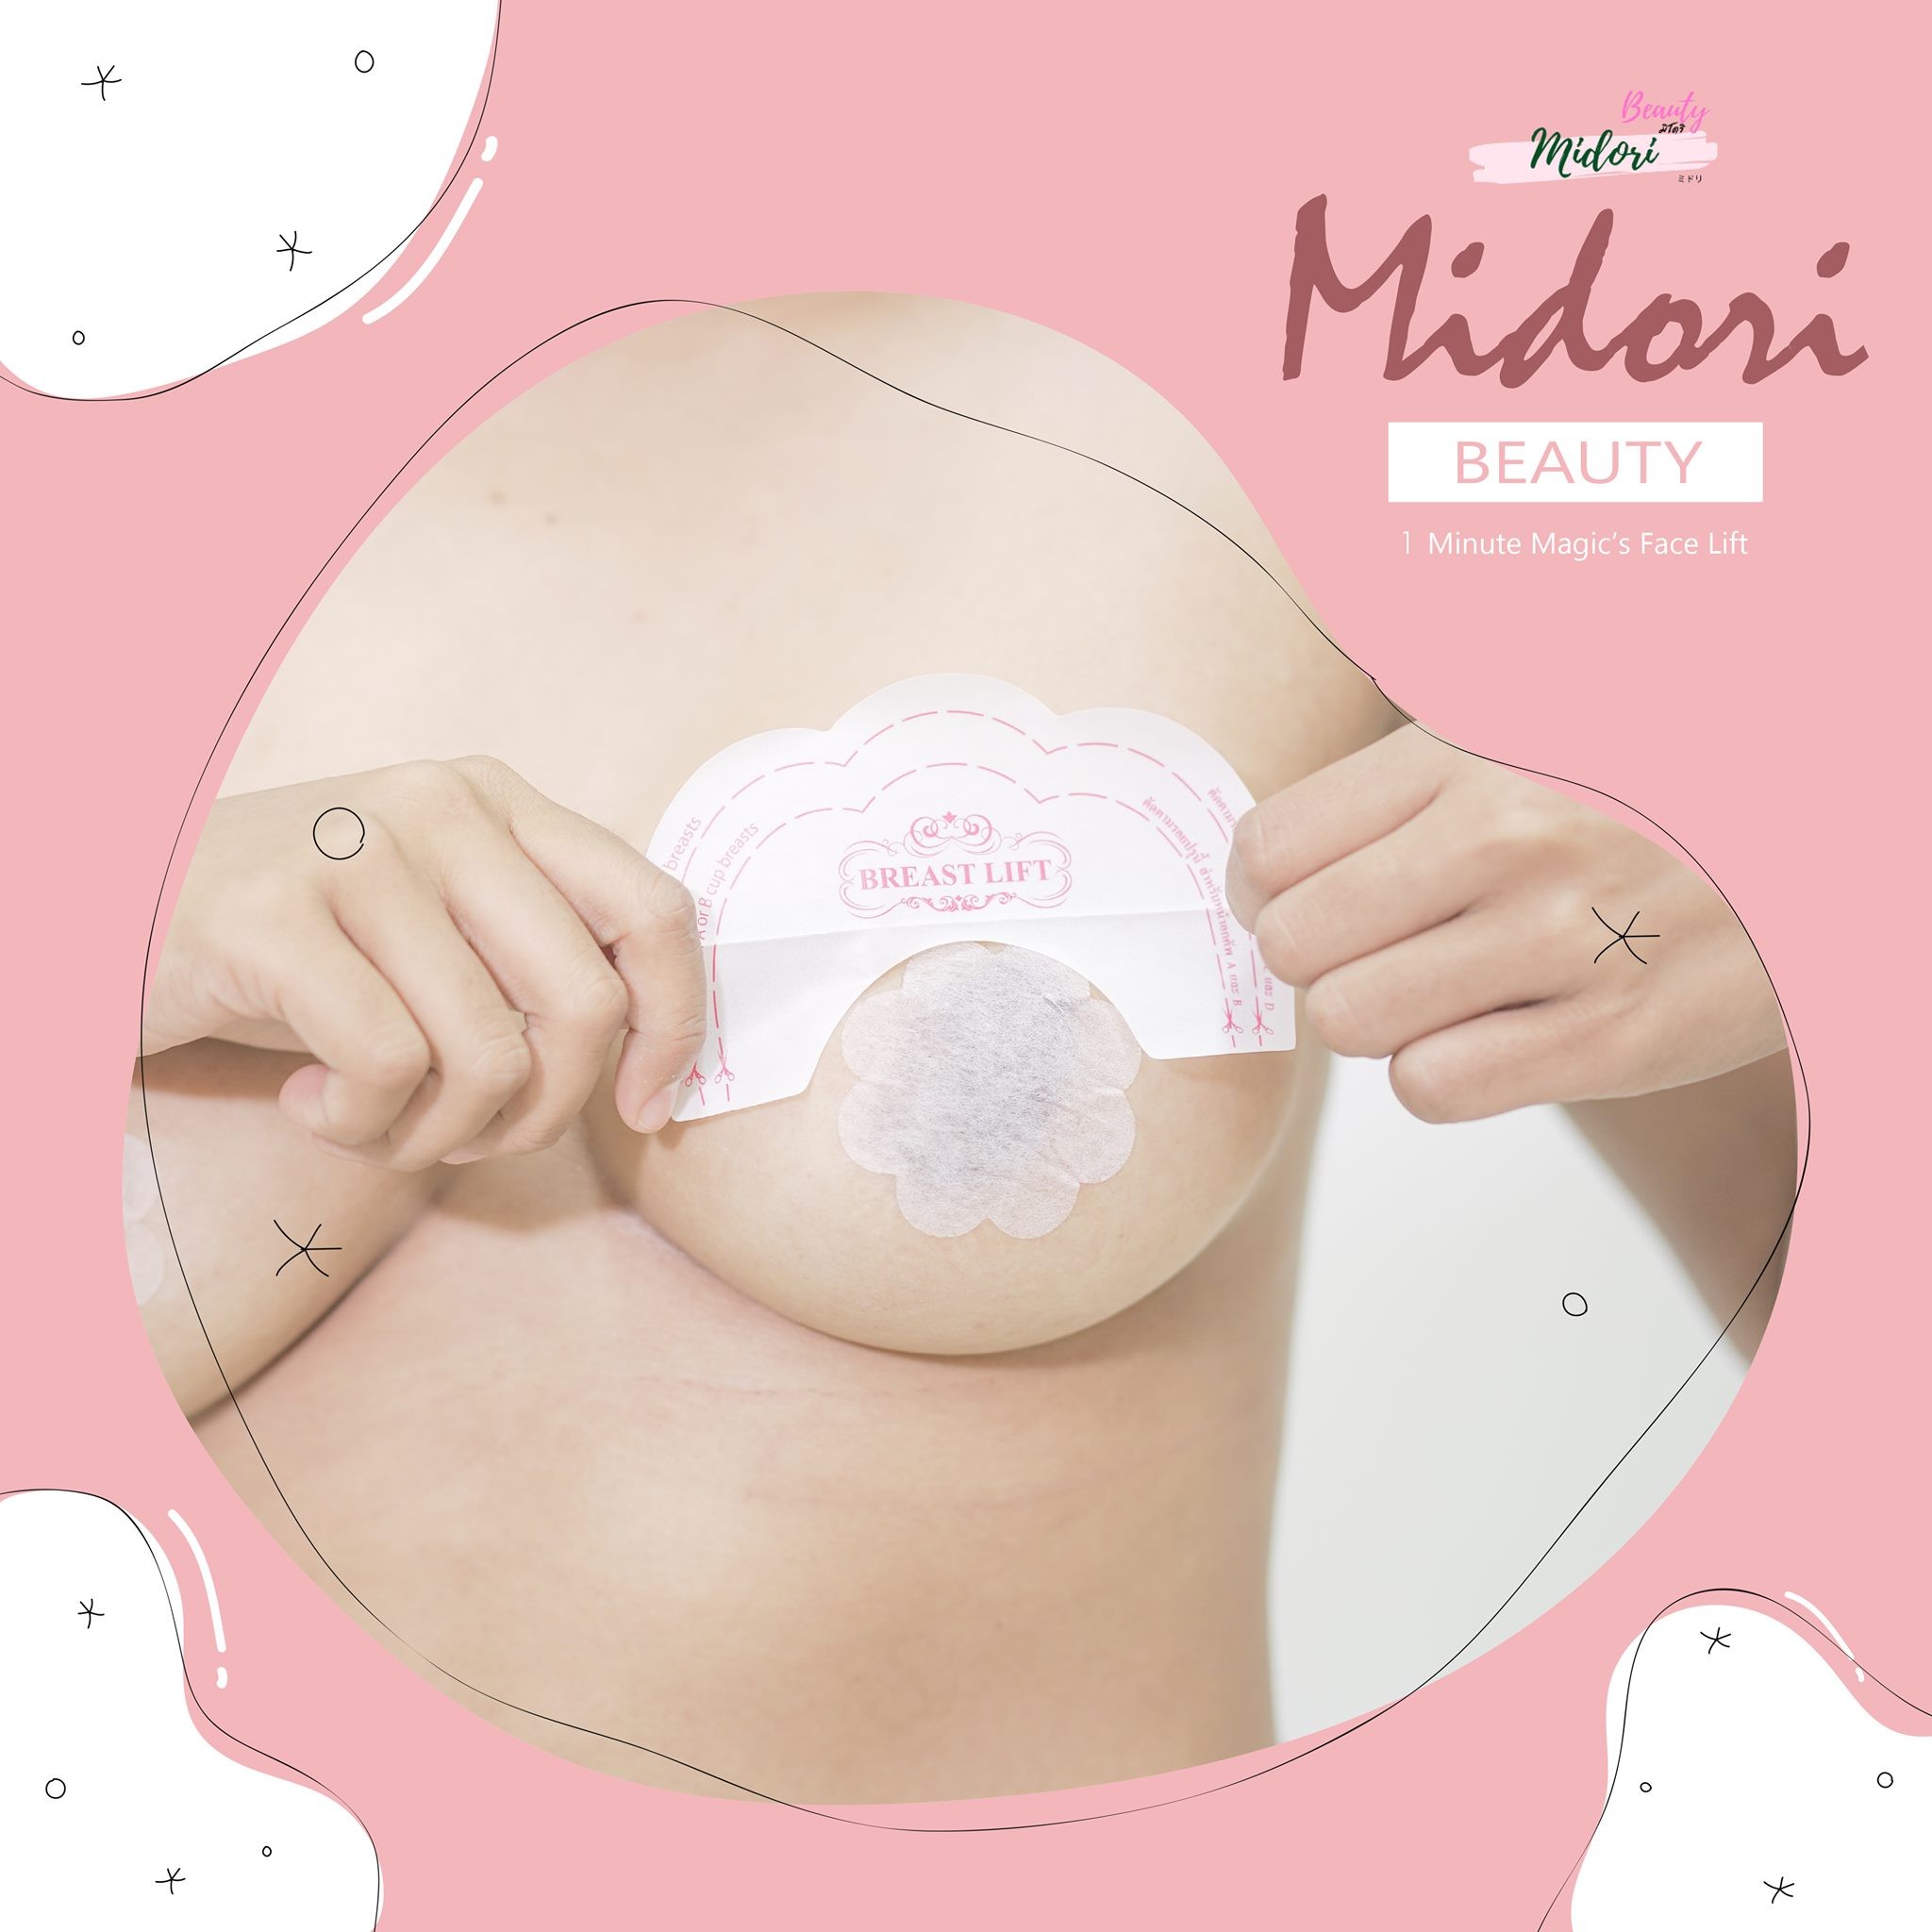 Midori Breast List Tape